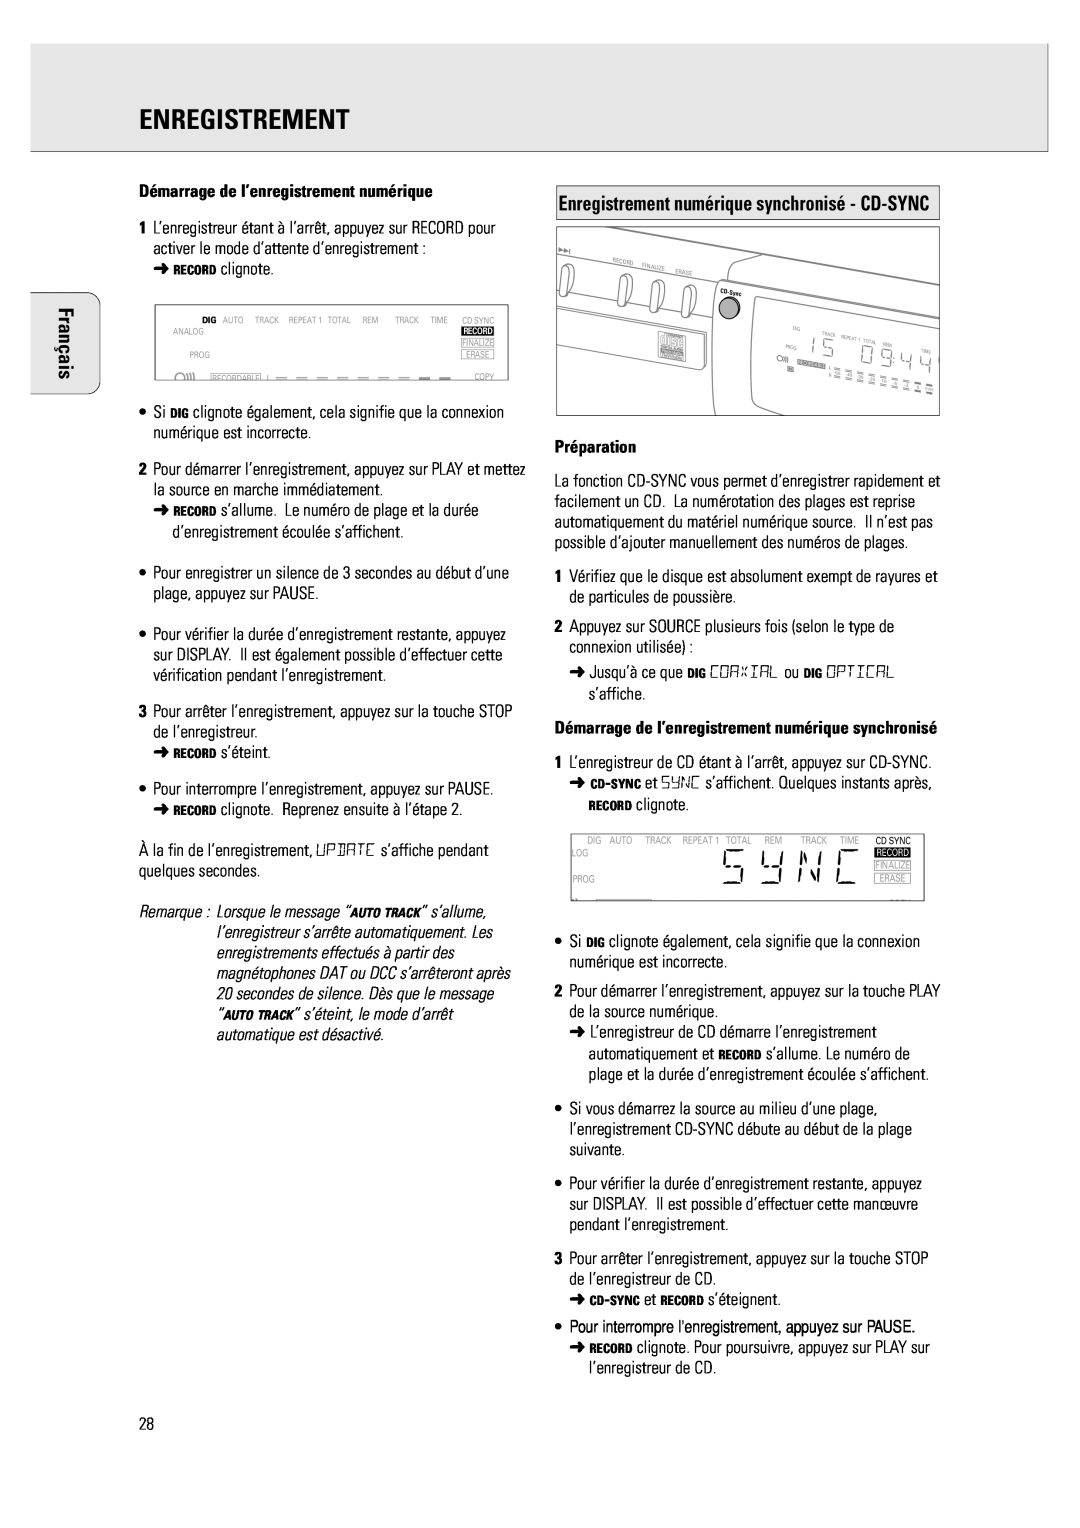 Philips CDR 760 manual Enregistrement numérique synchronisé - CD-SYNC, Démarrage de l’enregistrement numérique, Préparation 